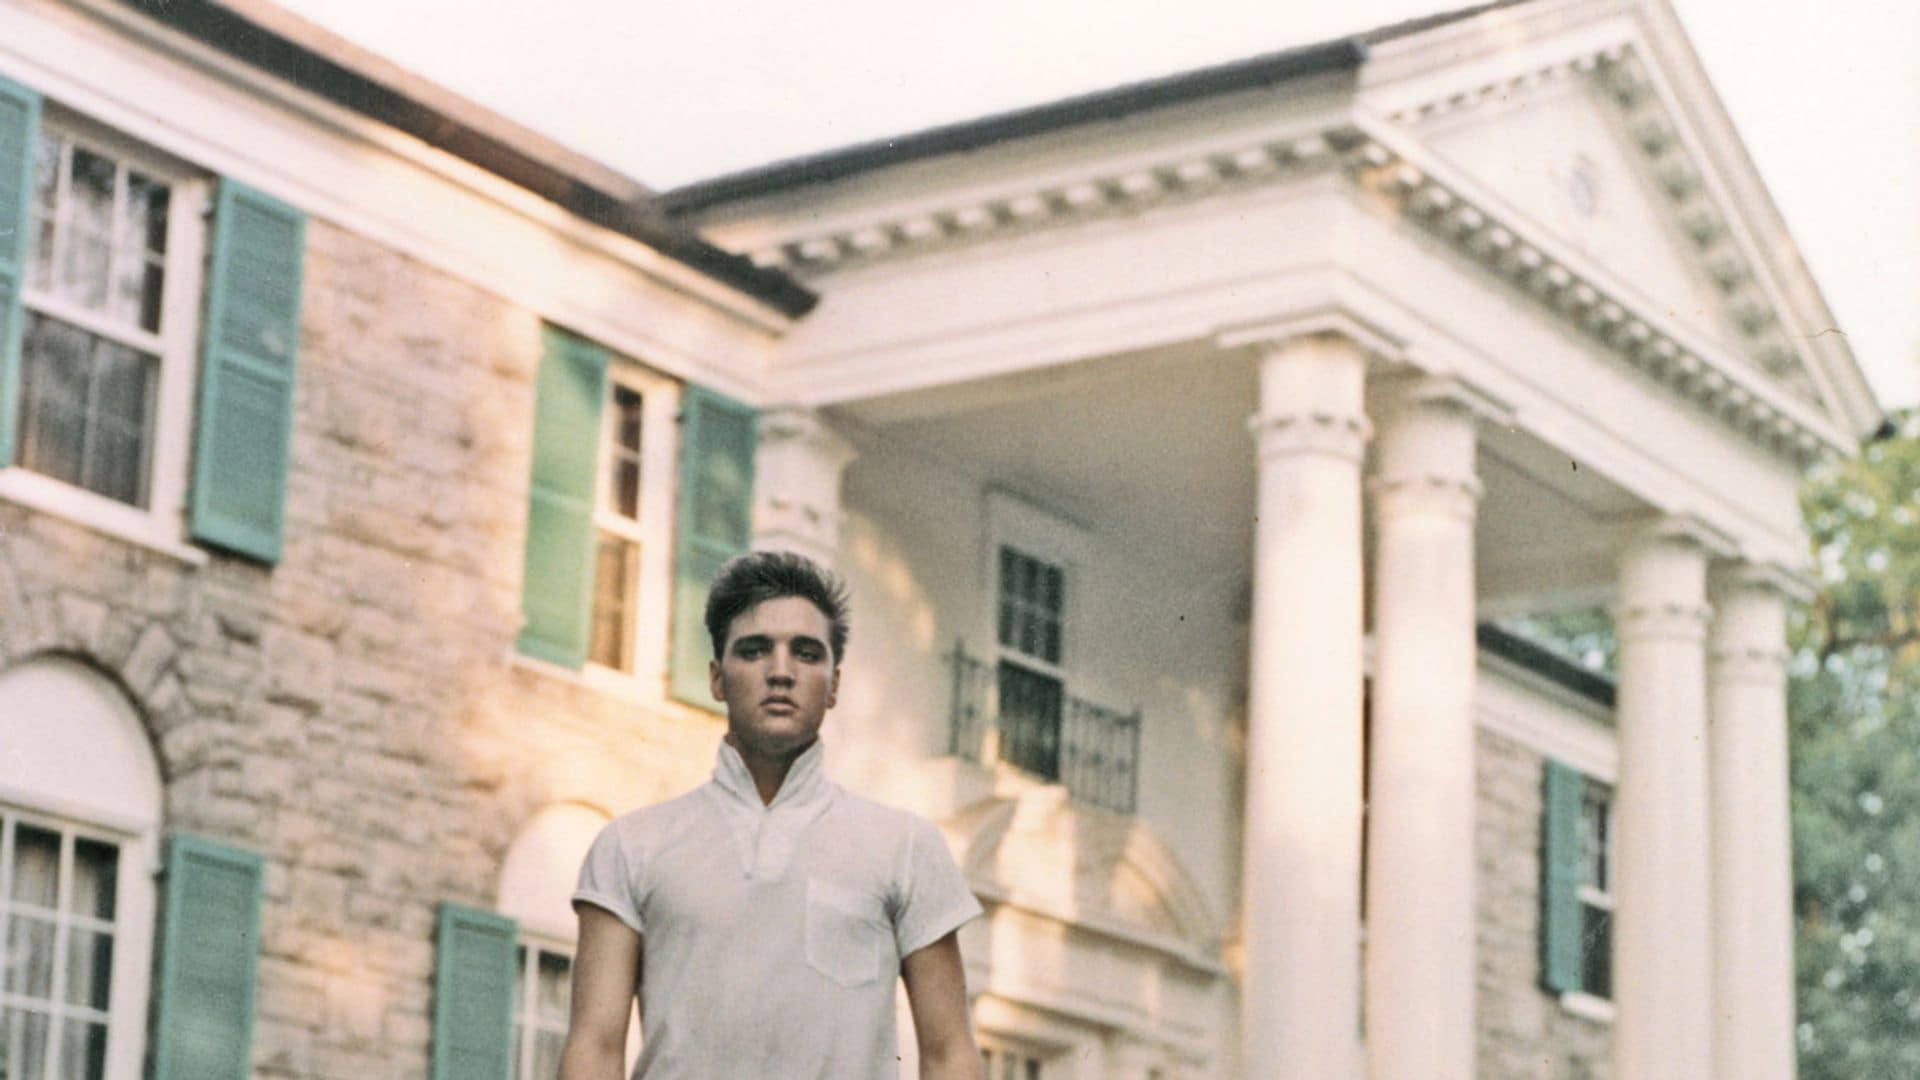 El juez paraliza en el último minuto la polémica subasta de Graceland, mítica mansión de Elvis Presley